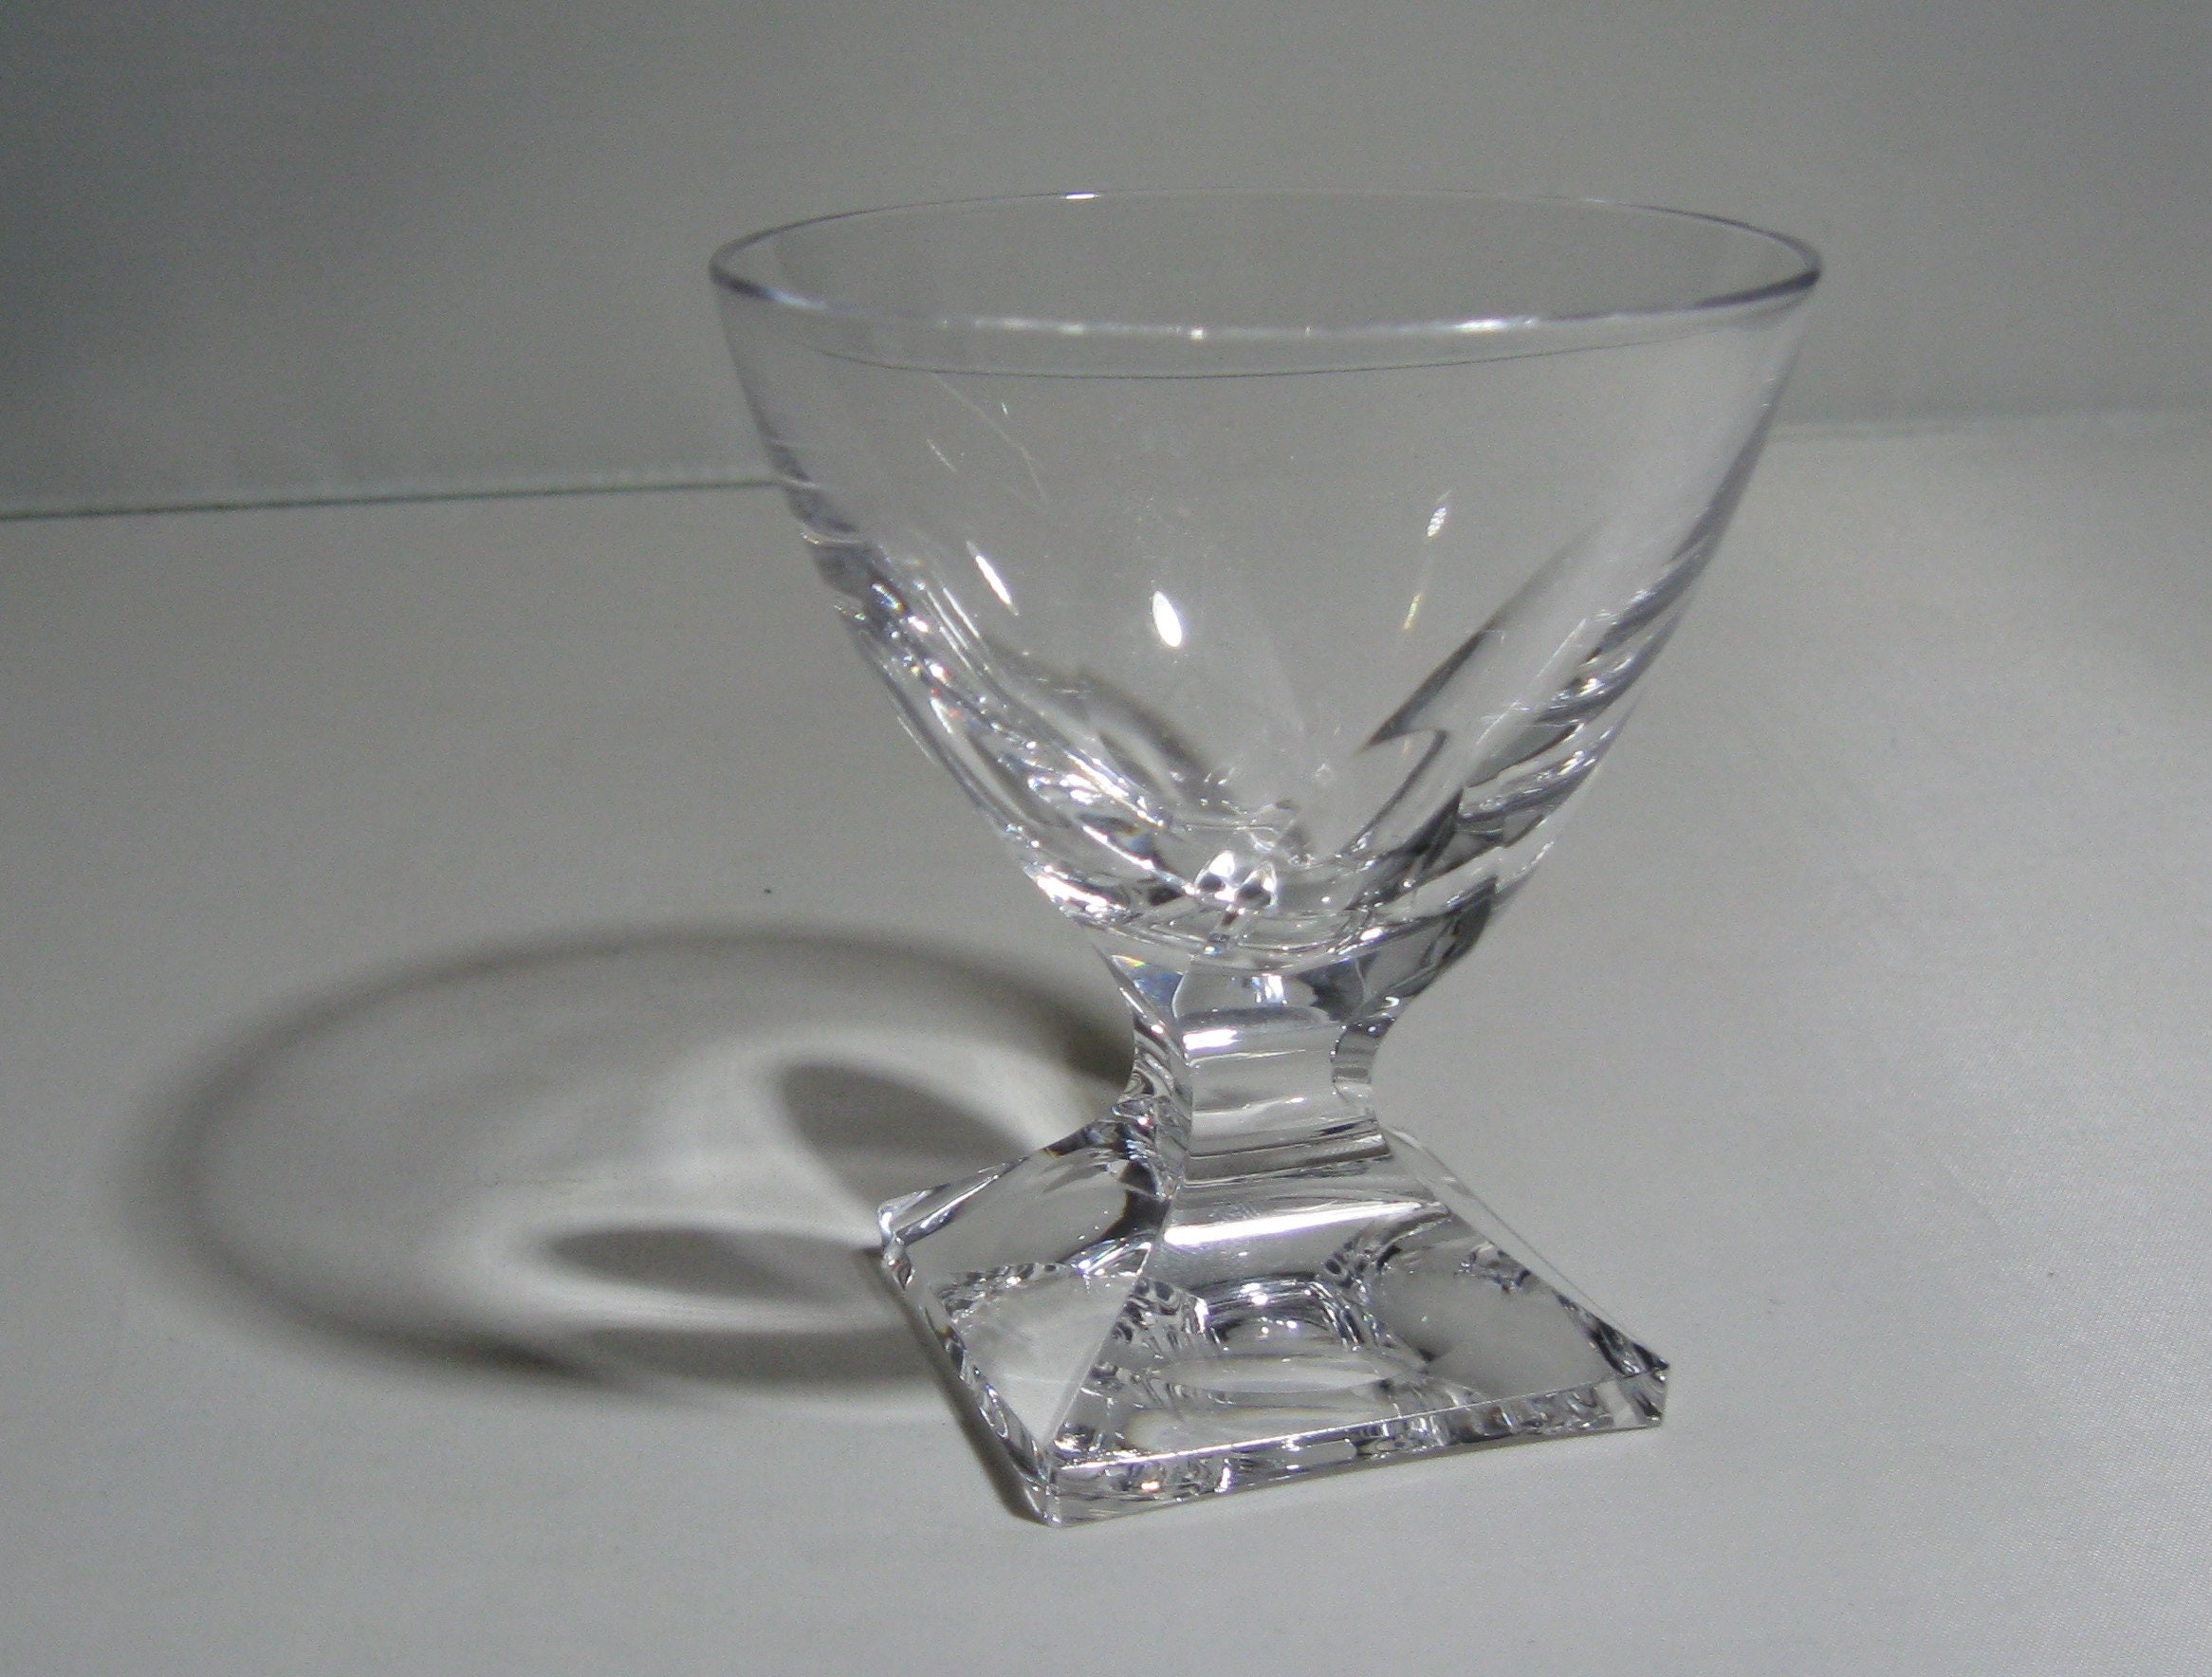 Peill Karat Marsala Portwein Glas H Wagenfeld 8,3 cm Kristall geschliffen W 